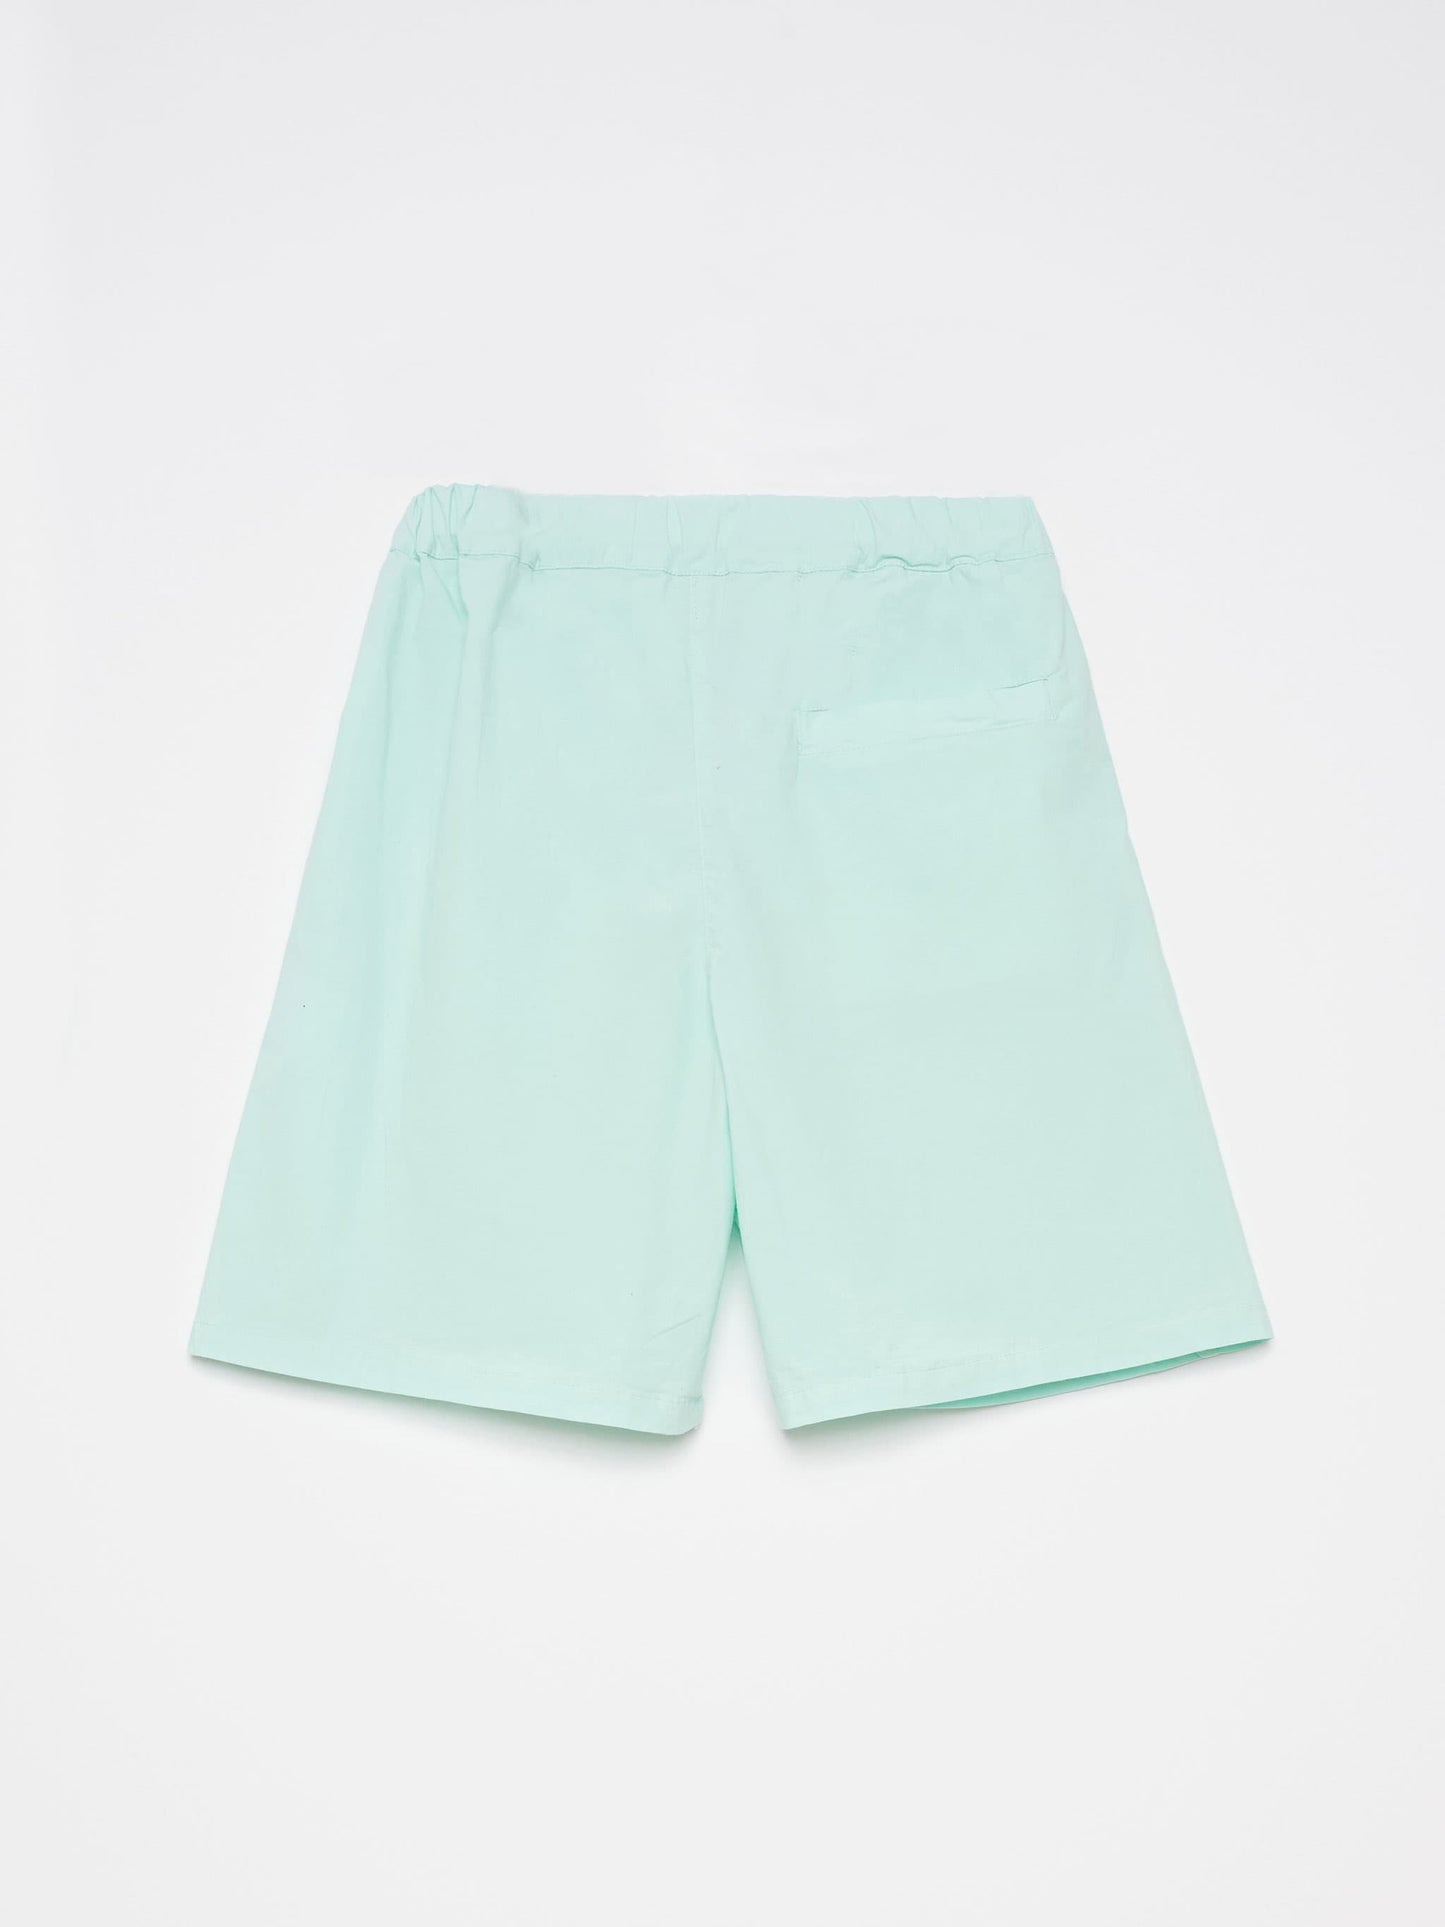 Shorts nº06 Aqua Green